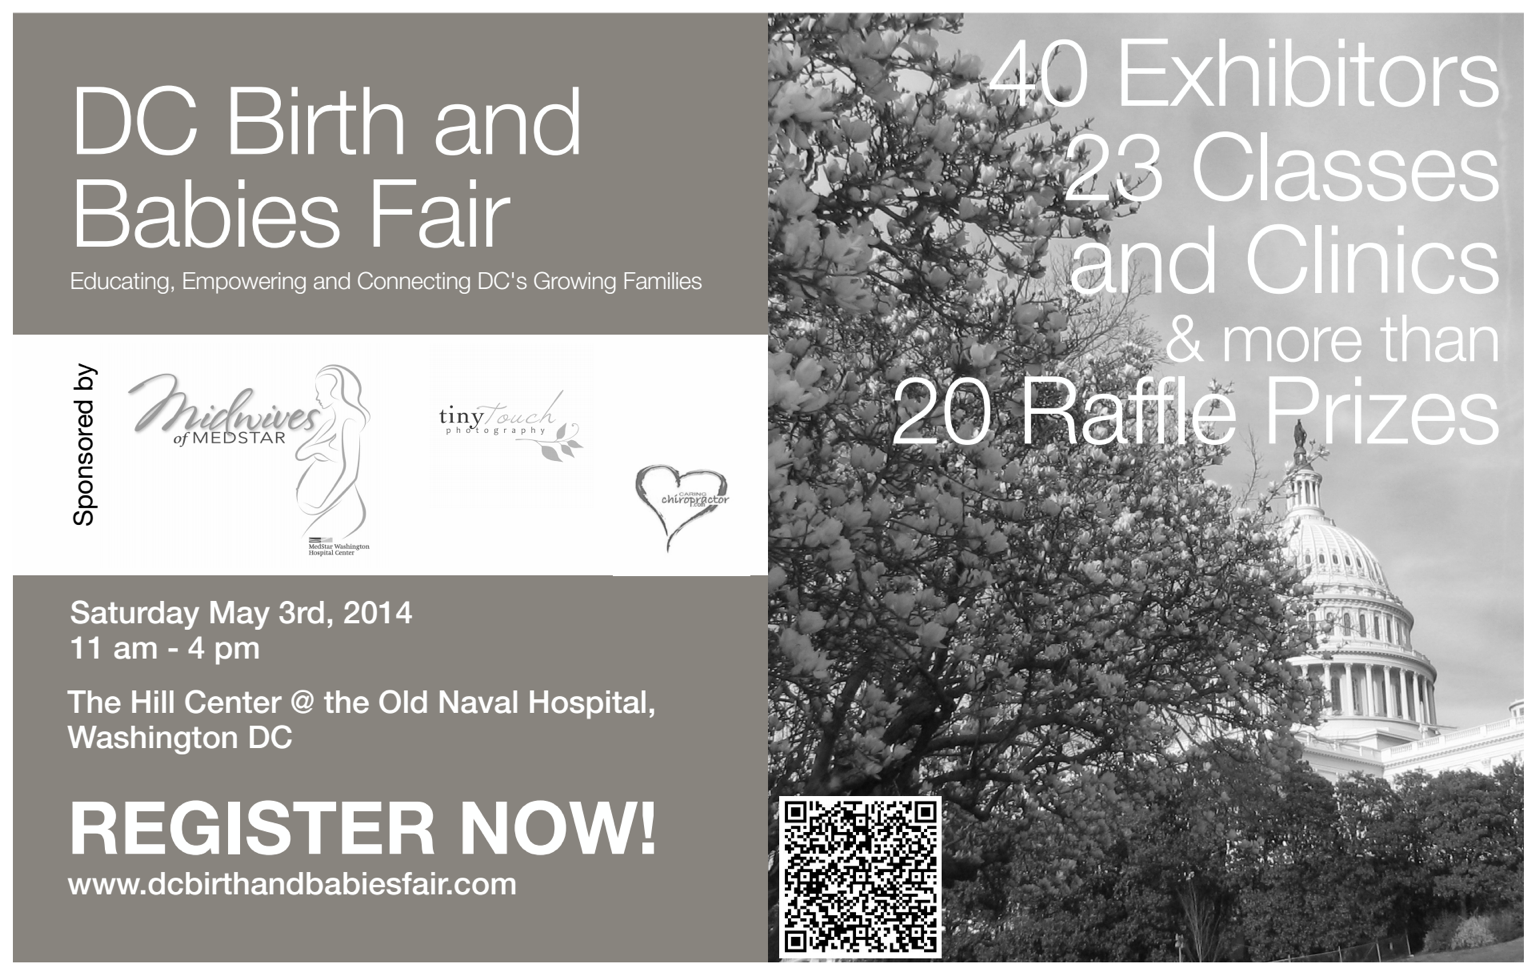 d.c. birth and babies fair 2014 via @chgdiapers